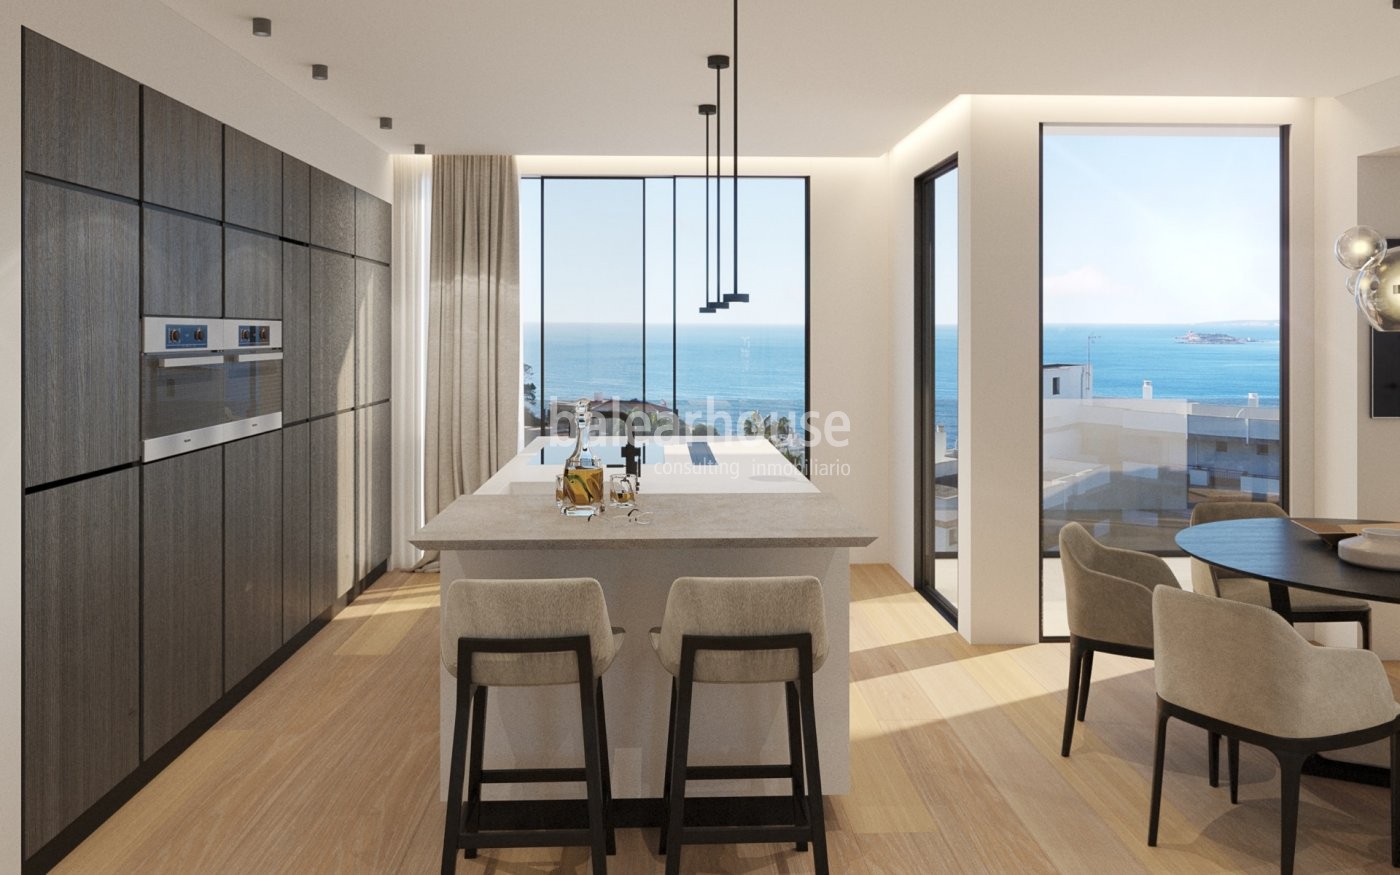 Espectacular piso de diseño contemporáneo abierto a unas deslumbrantes vistas al mar.